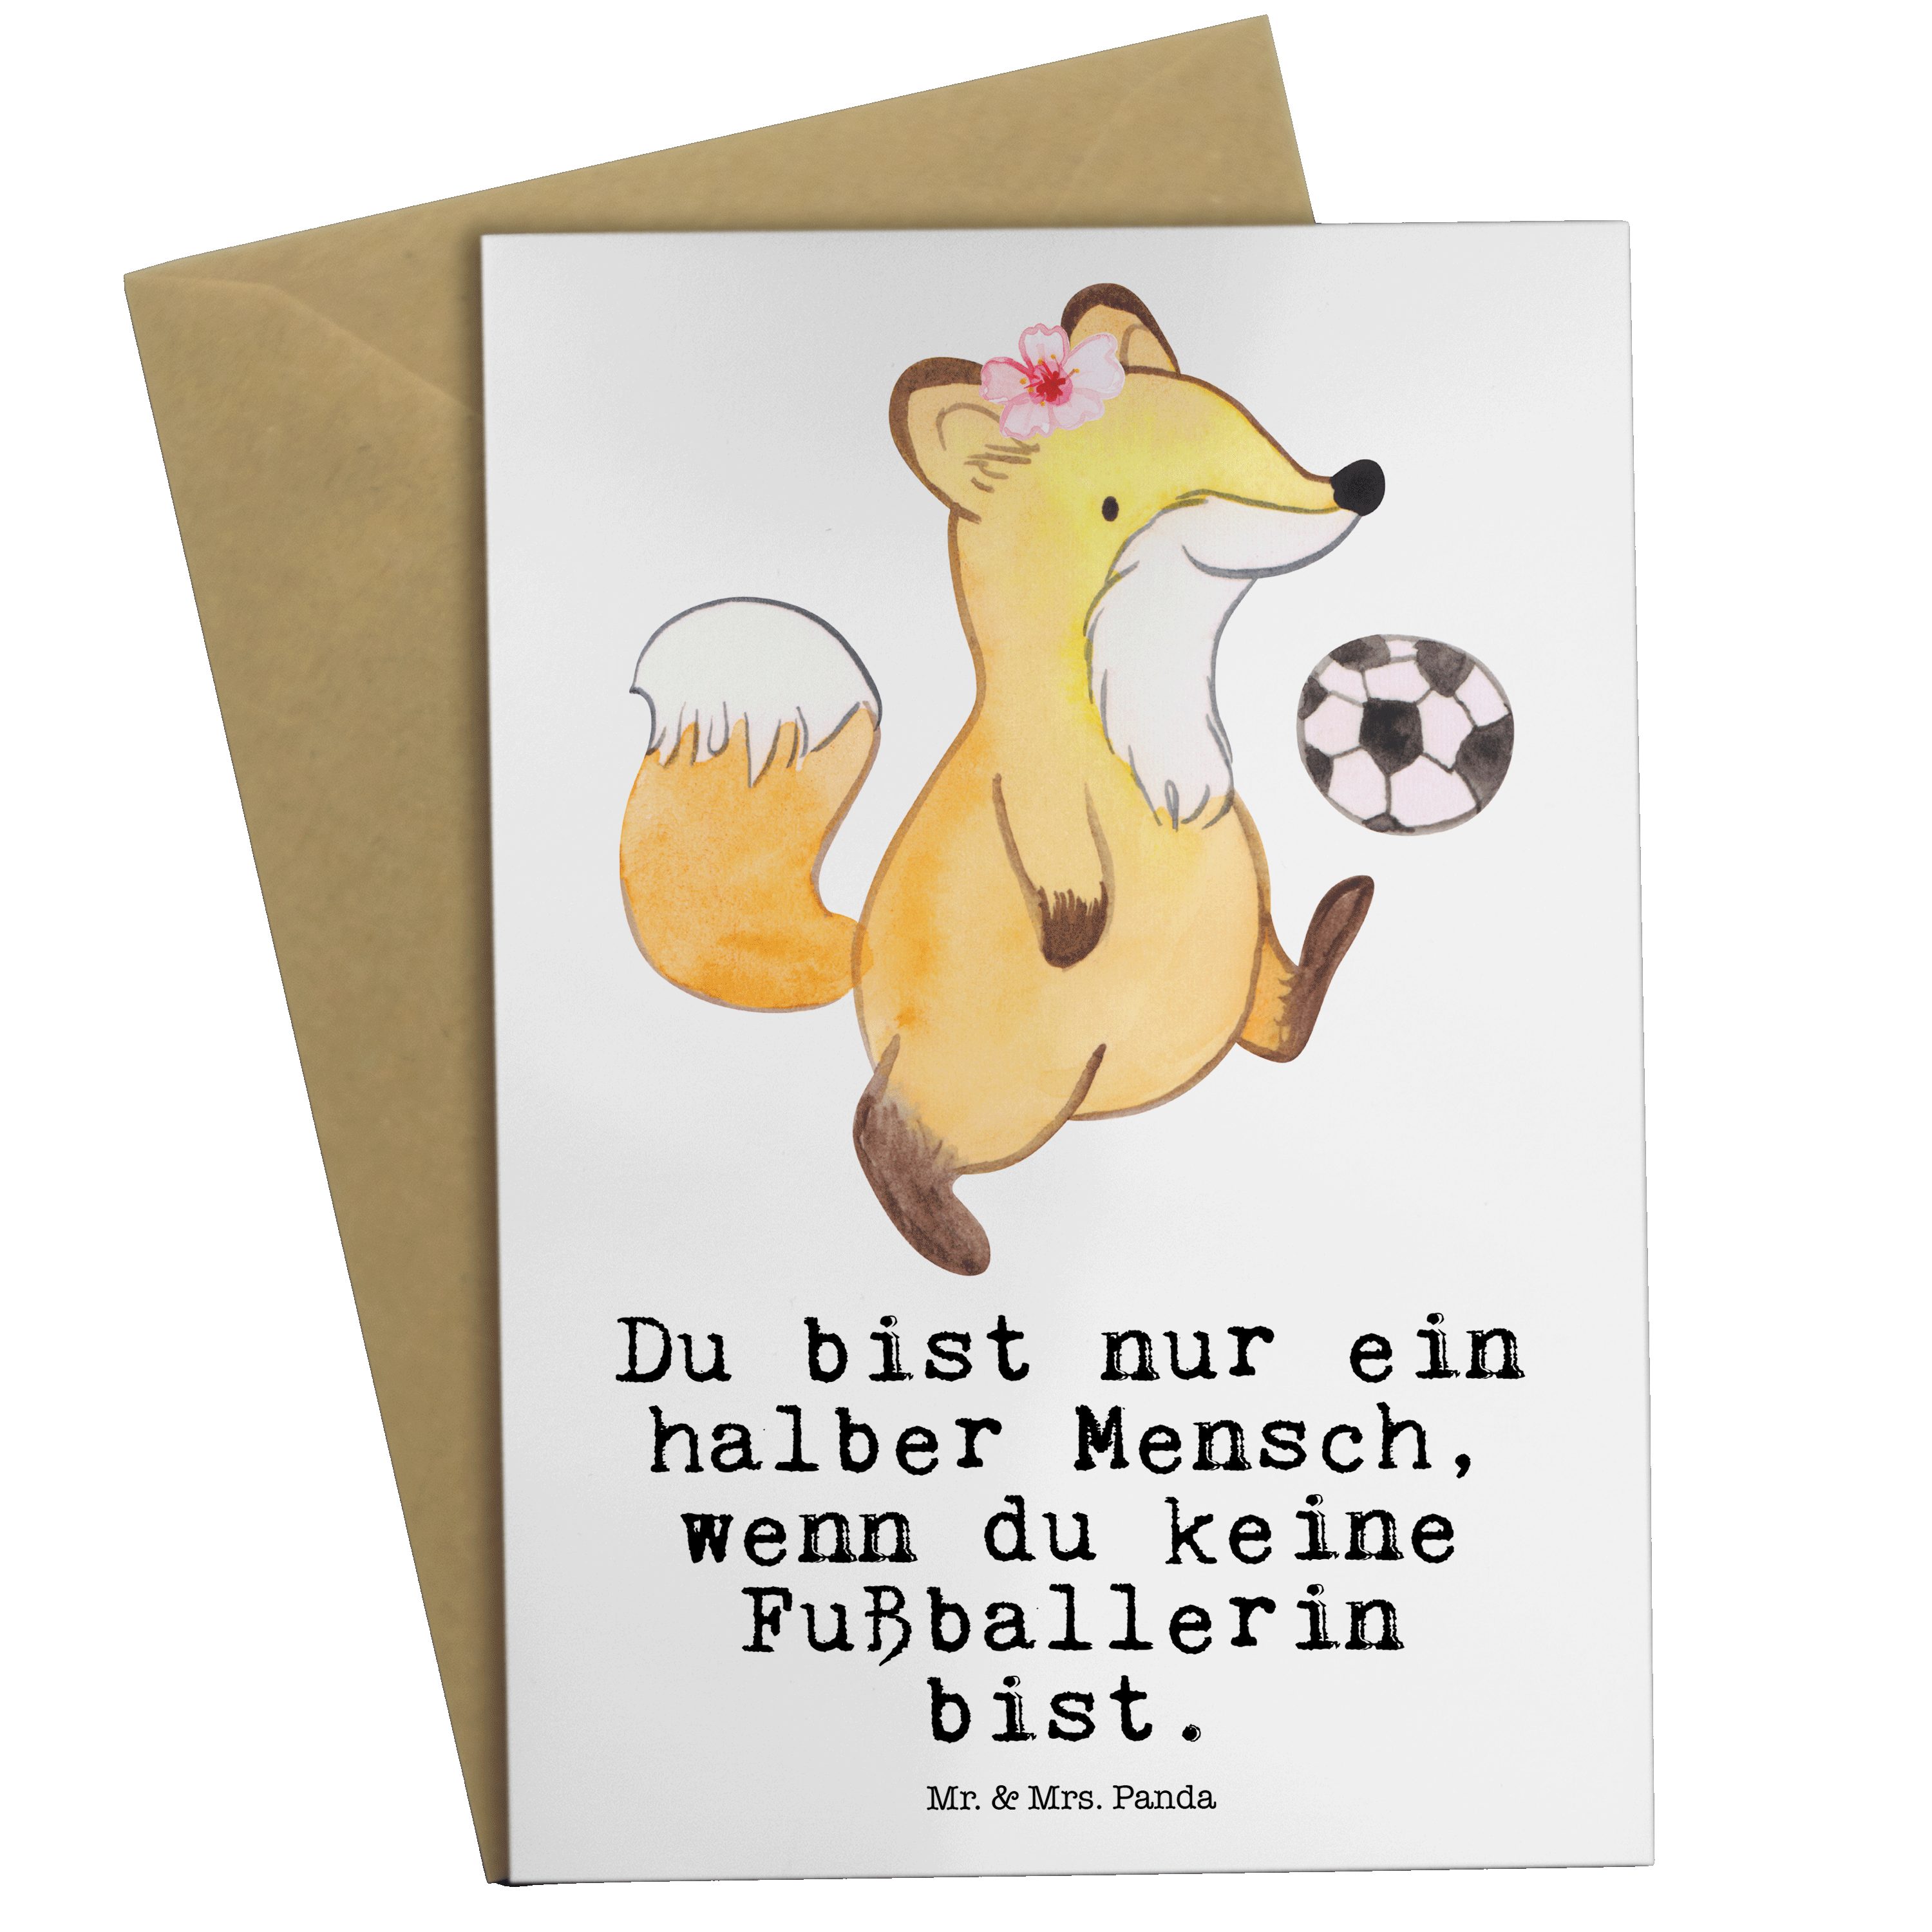 Mr. & Mrs. Panda Grußkarte Fußballerin mit Herz - Weiß - Geschenk, Jubiläum, Karte, Fußballspiel